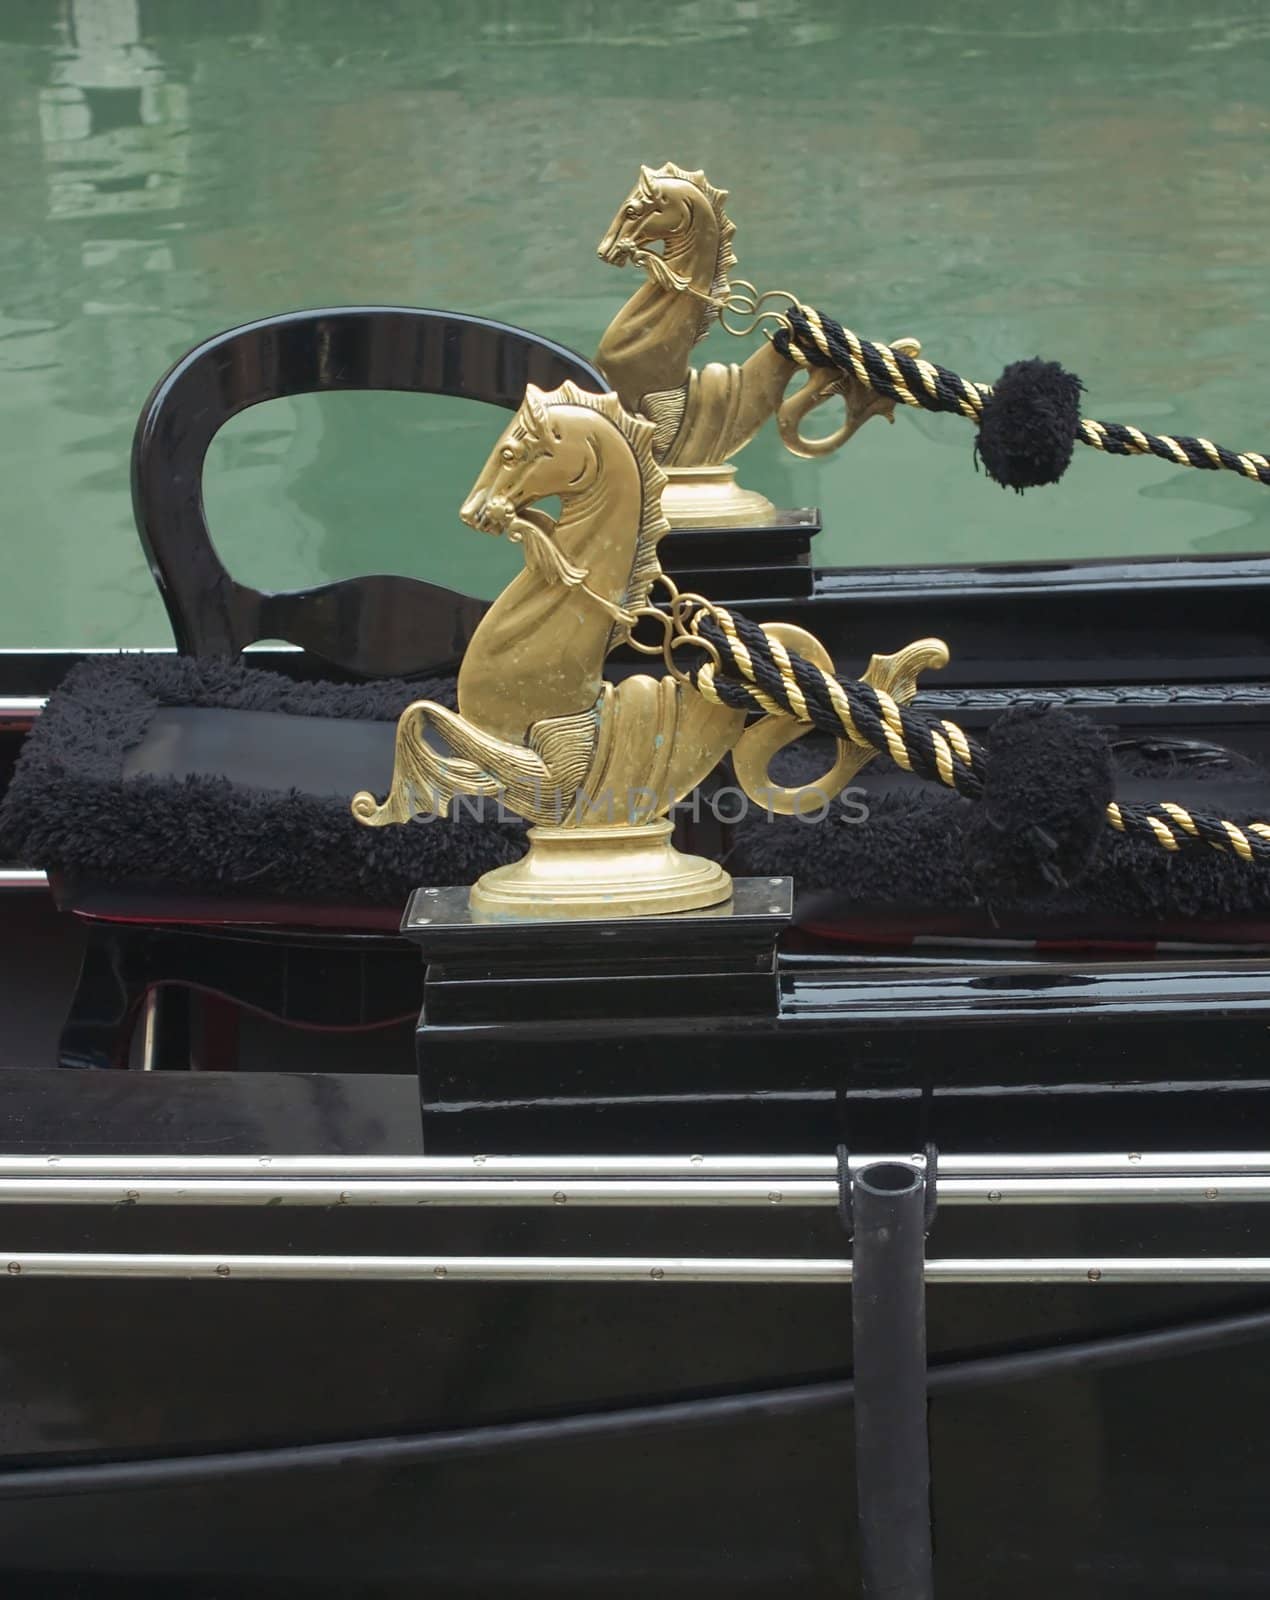 Figures bronze horses - decor of Venetian gondola